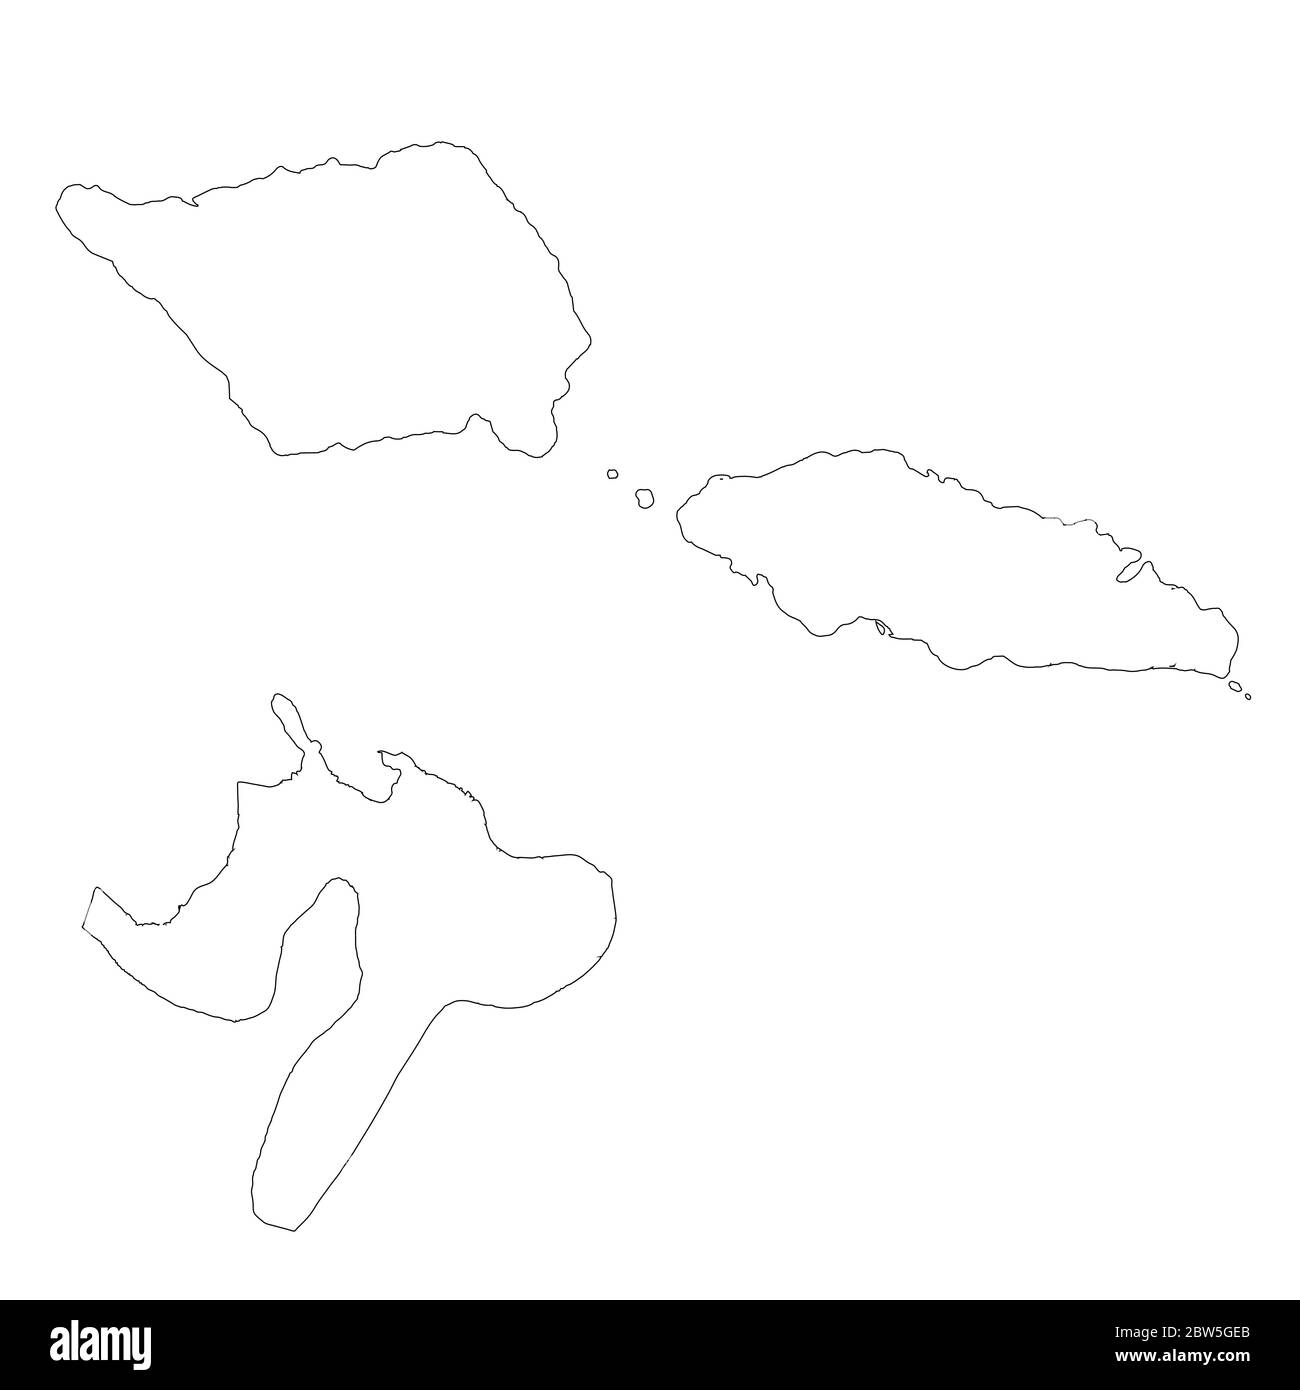 Vektorkarte Samoa und Apia. Land und Hauptstadt. Isolierte Vektorgrafik. Übersicht. EPS 10-Abbildung. Stock Vektor